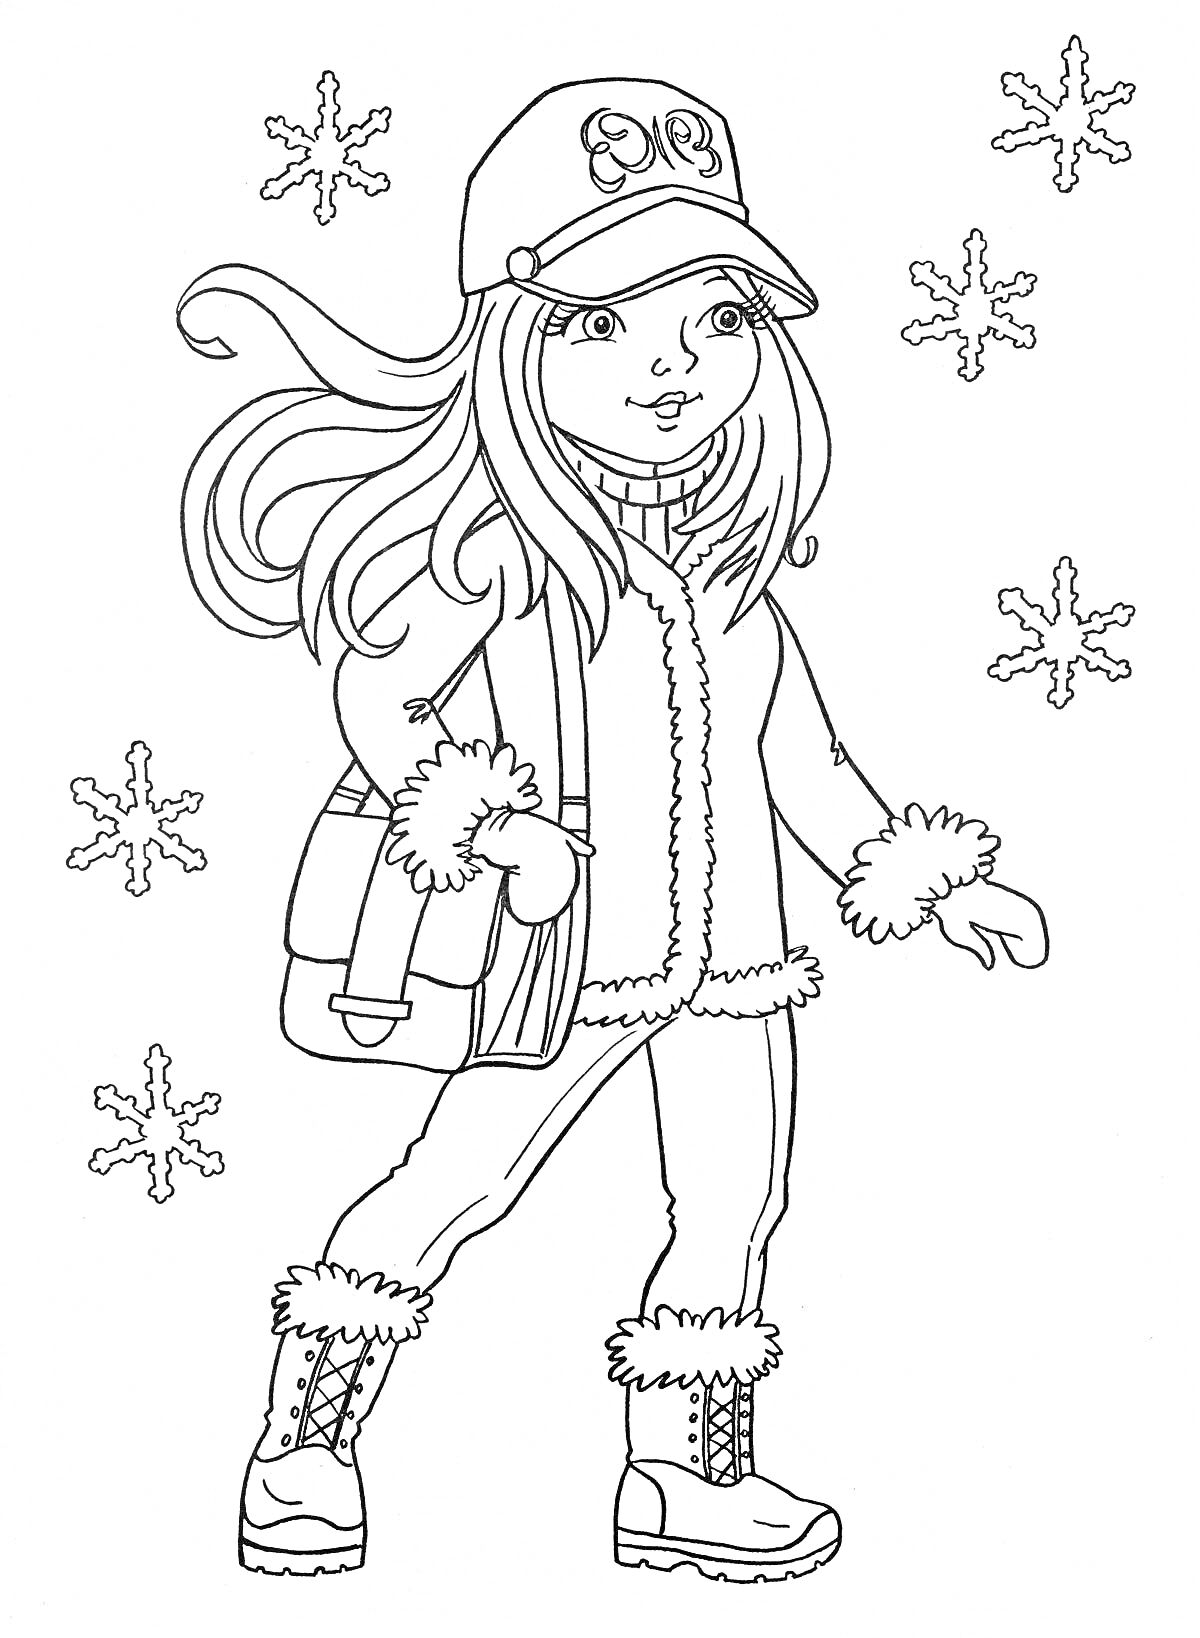 Раскраска Девочка в зимней одежде с сумкой и снежинками